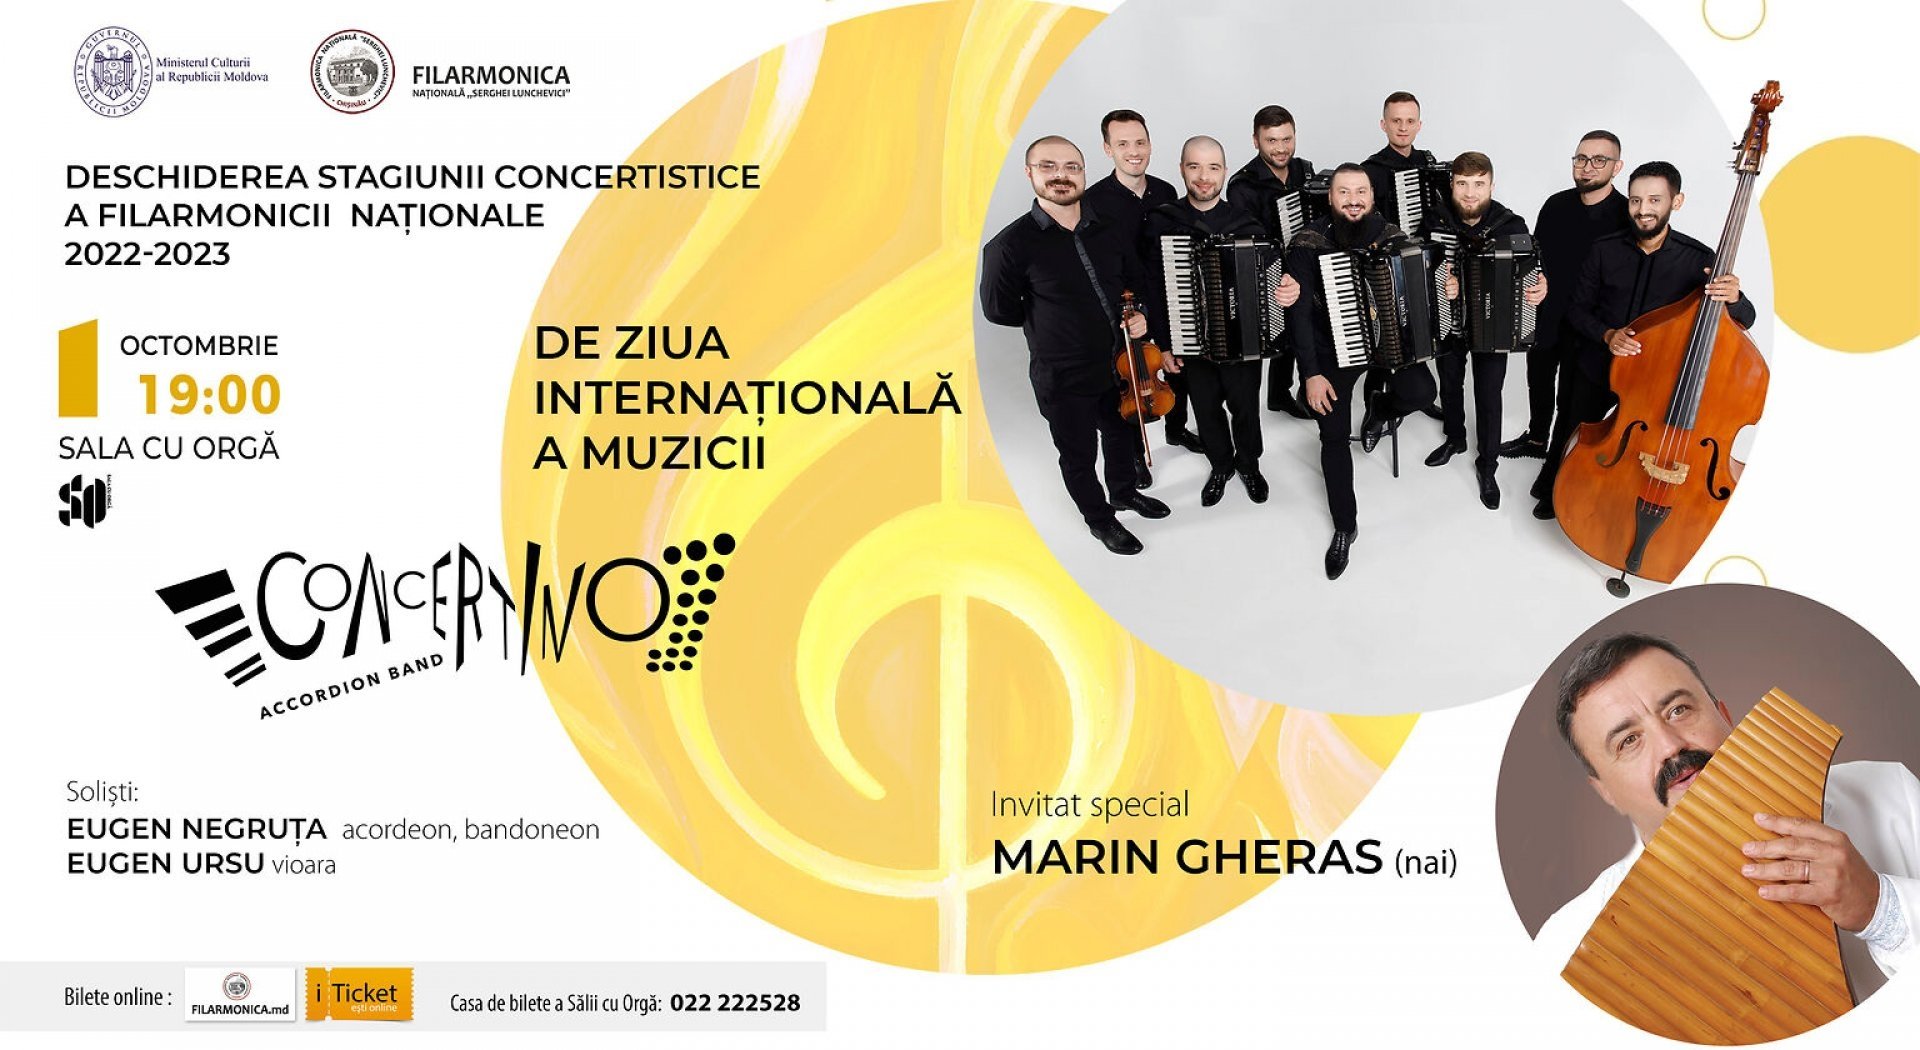 Deschiderea Stagiunii Concertistice 2022-2023. Concertino Accordion Band